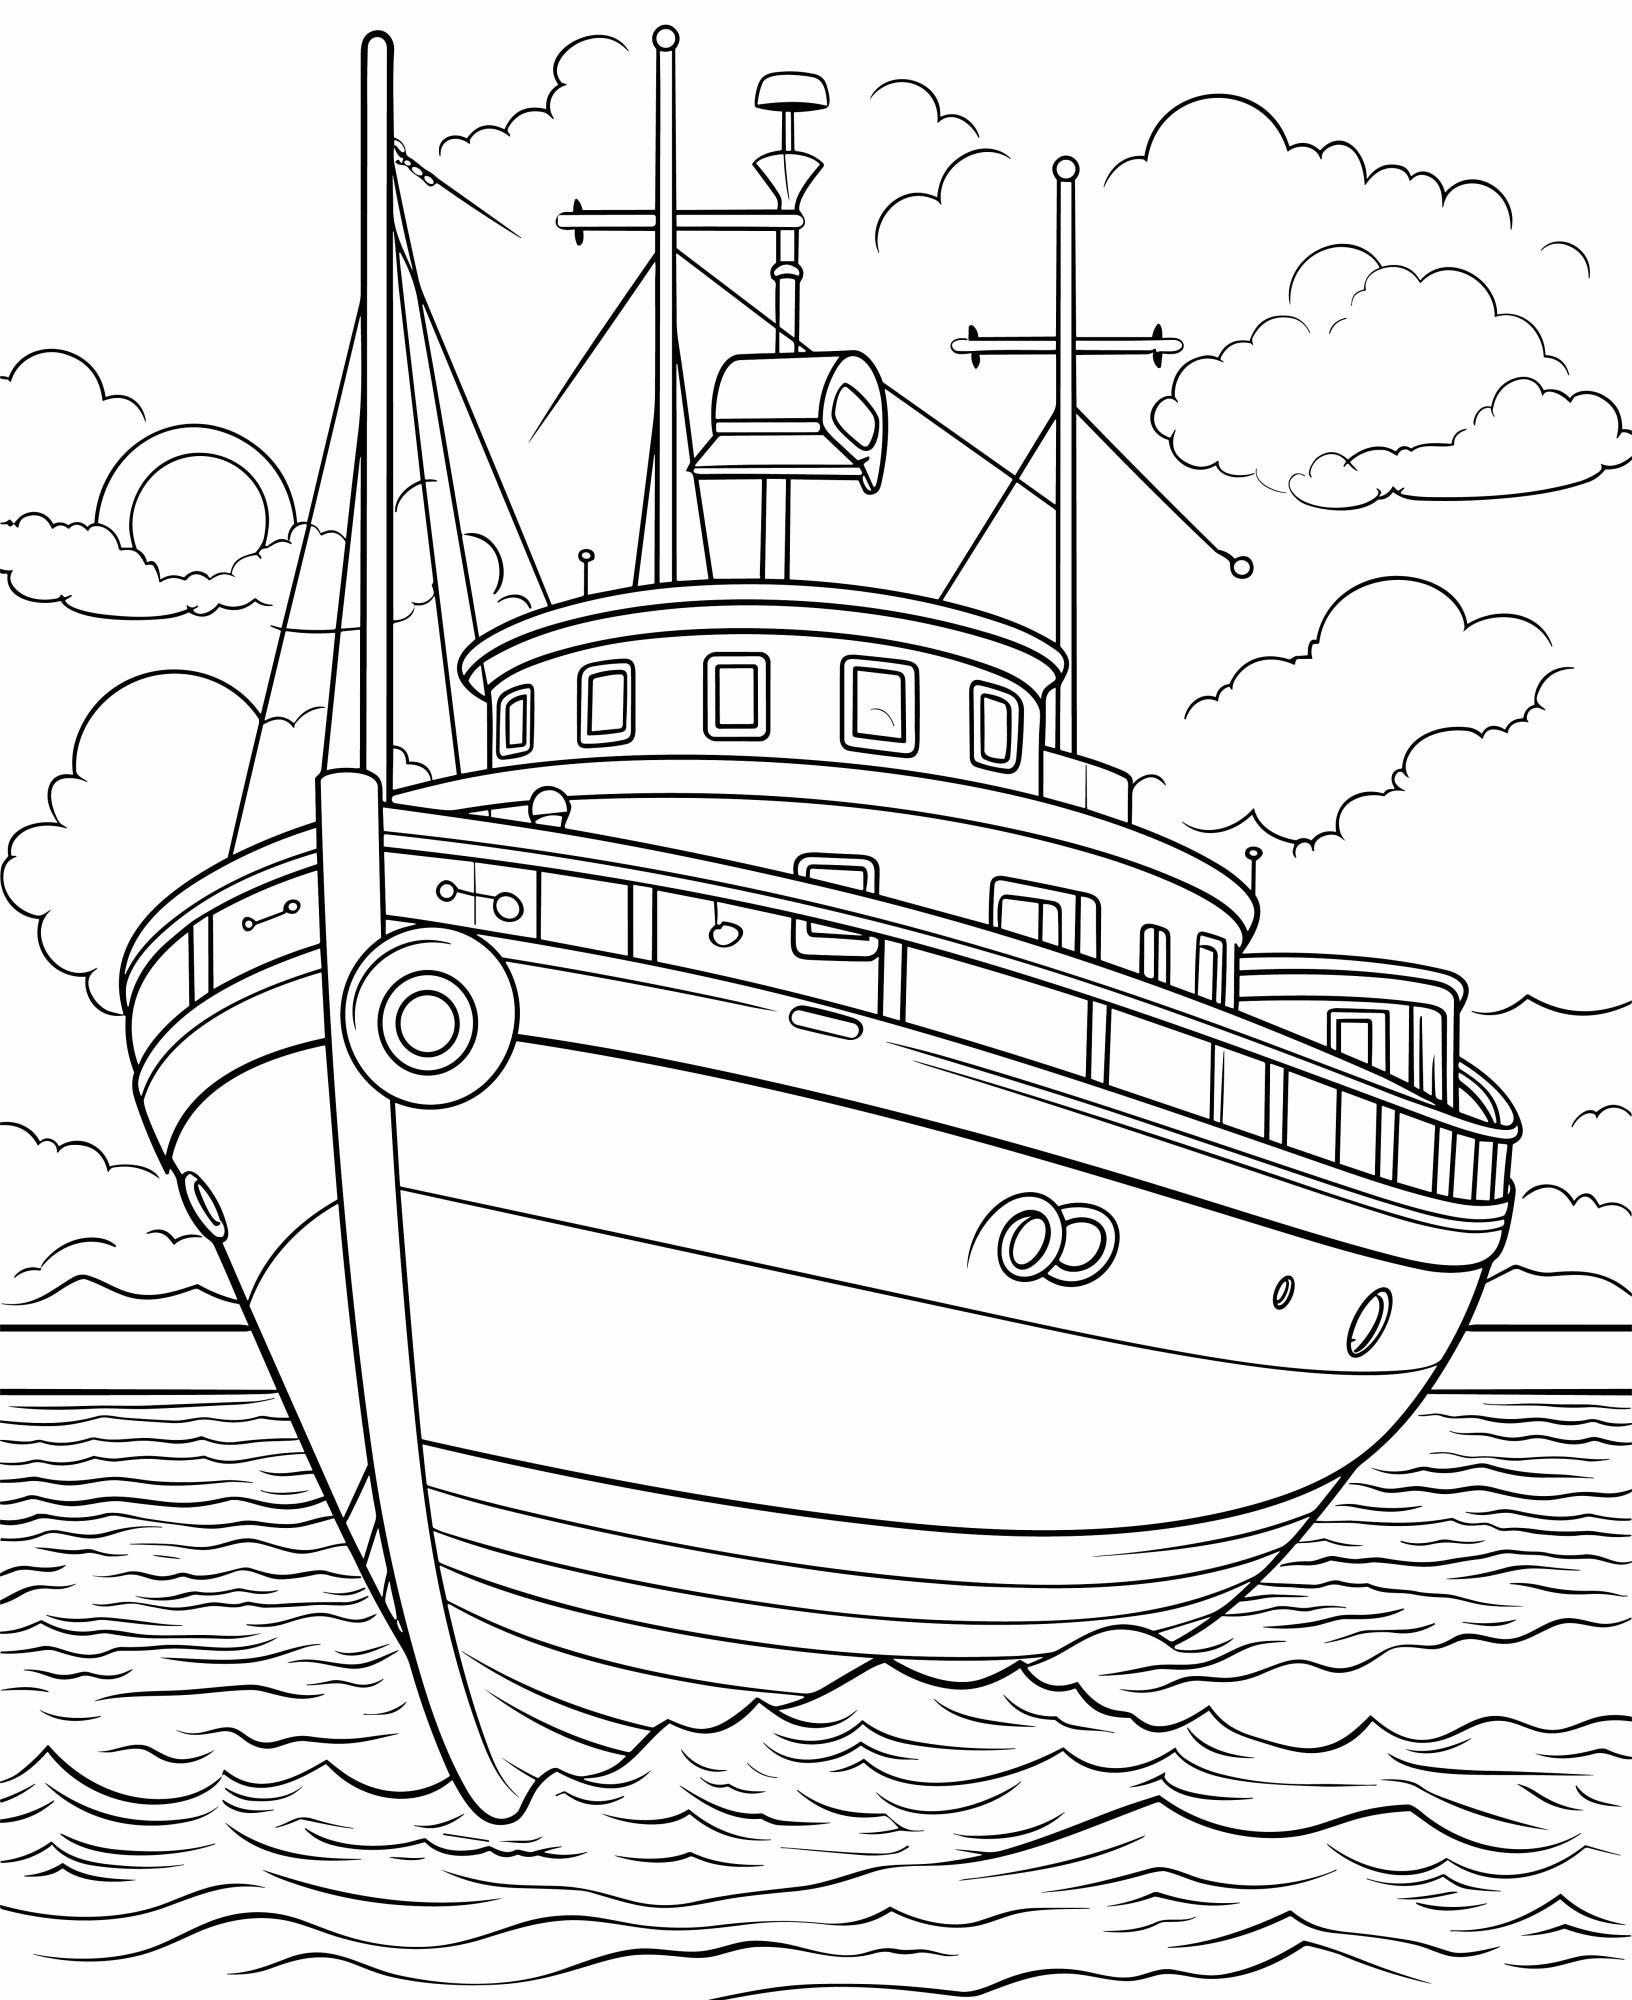 Раскраска для детей: корабль в море «Лазурные глубины»